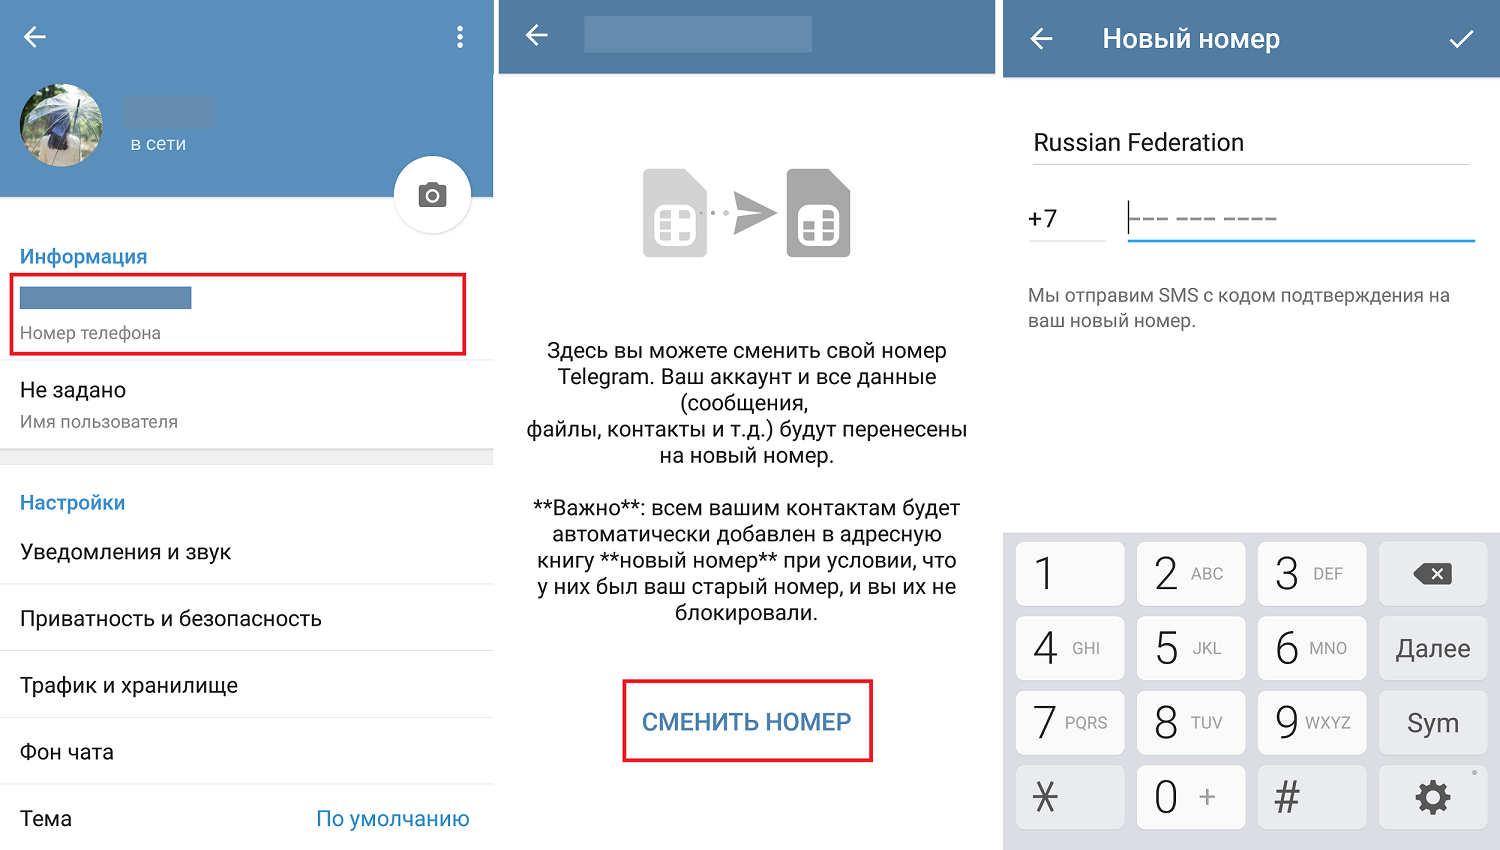 Телеграмм онлайн на русском языке регистрация с телефона по номеру бесплатно (119) фото